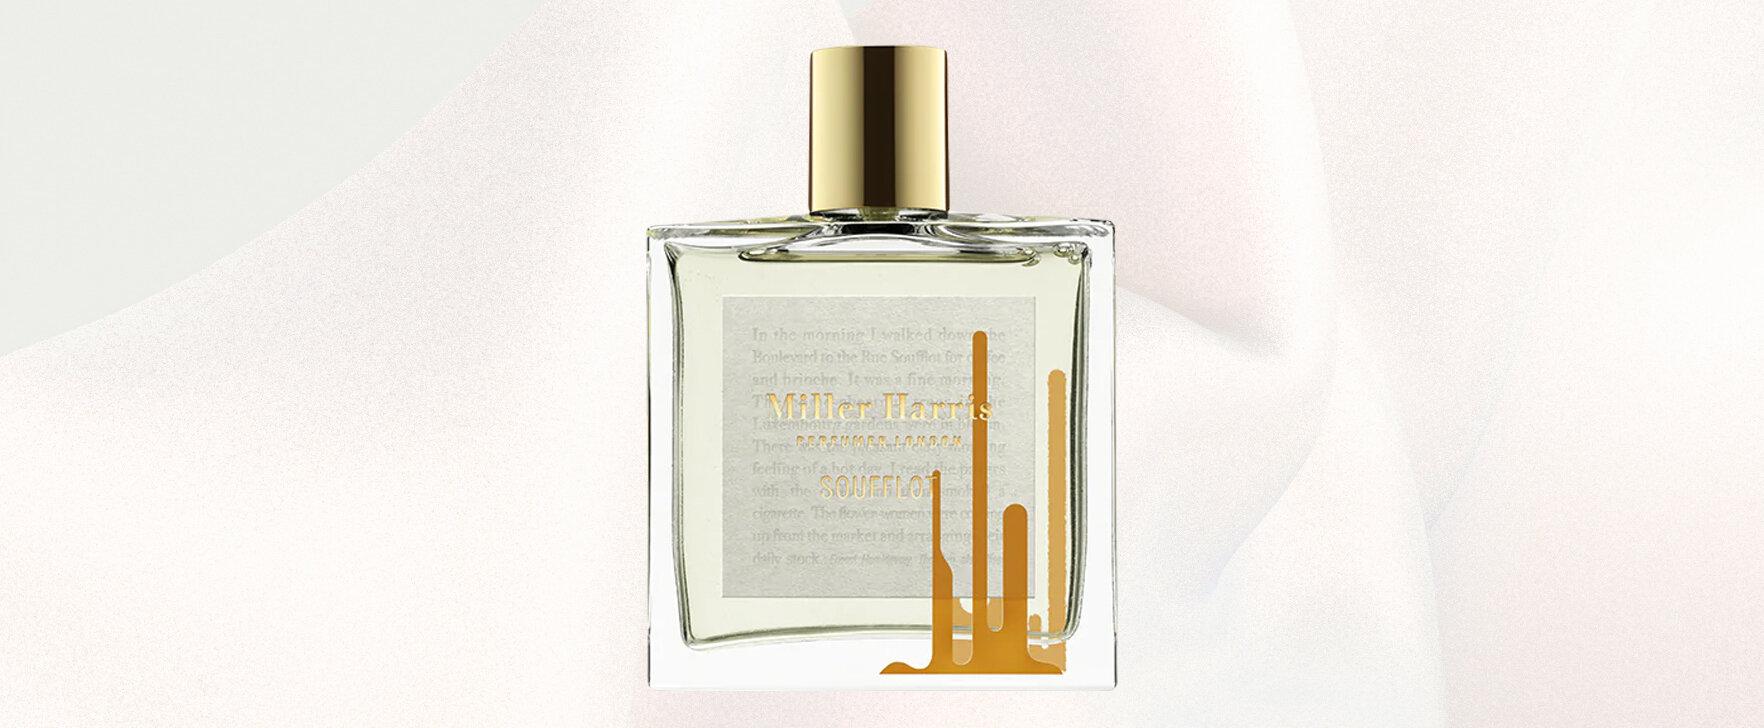 A Morning Scent Journey Through Paris: The New Soufflot Eau de Parfum by Miller Harris